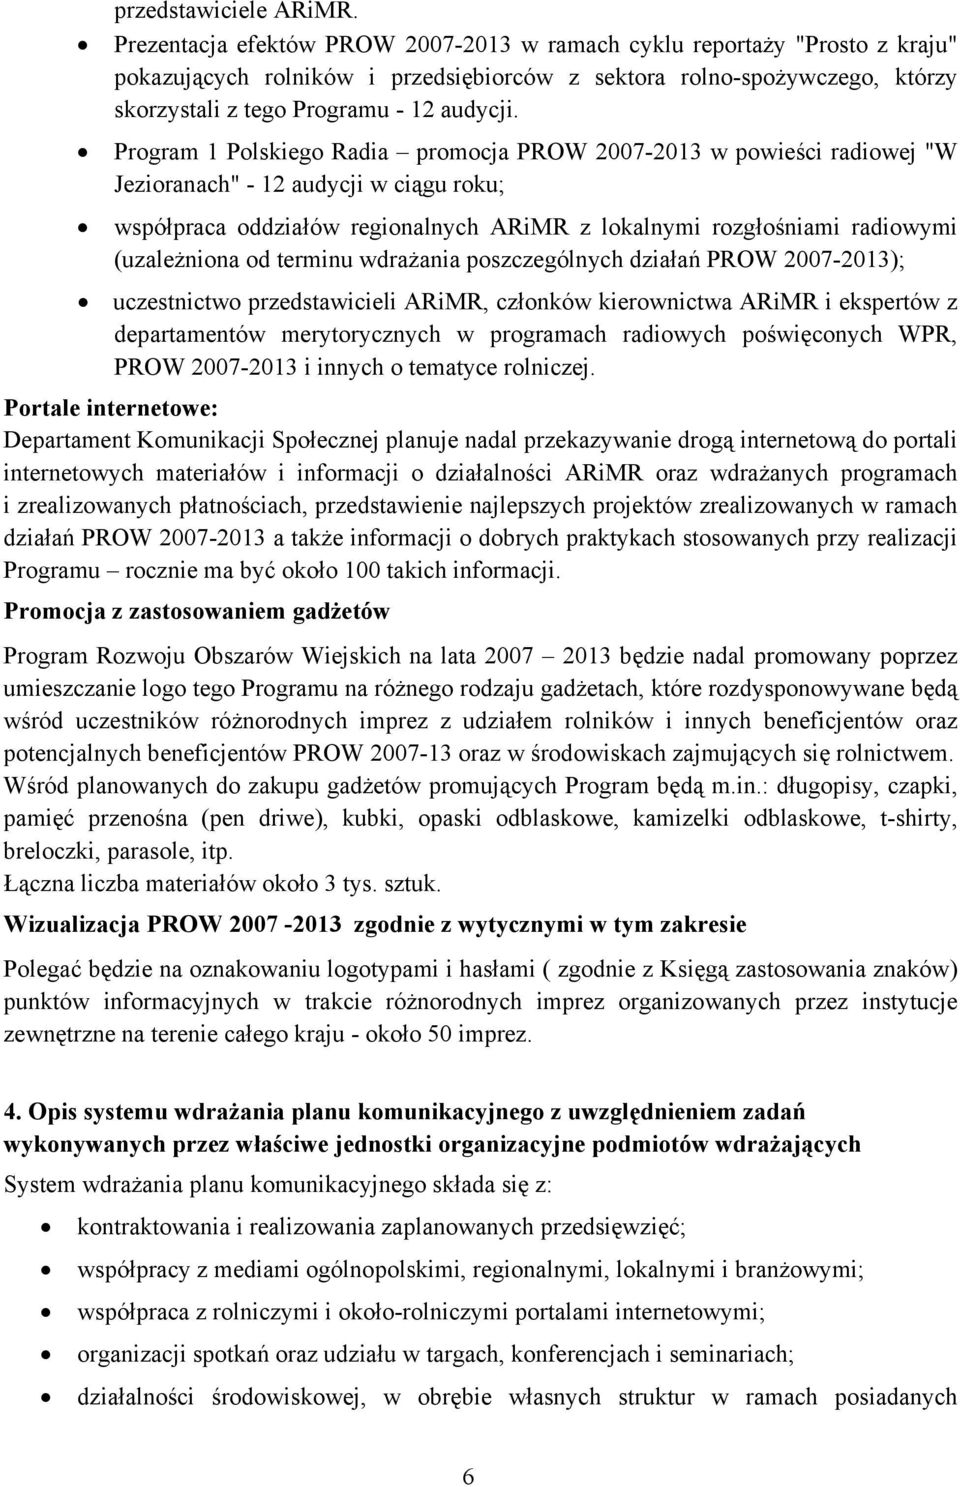 Program 1 Polskiego Radia promocja PROW 2007-2013 w powieści radiowej "W Jezioranach" - 12 audycji w ciągu roku; współpraca oddziałów regionalnych ARiMR z lokalnymi rozgłośniami radiowymi